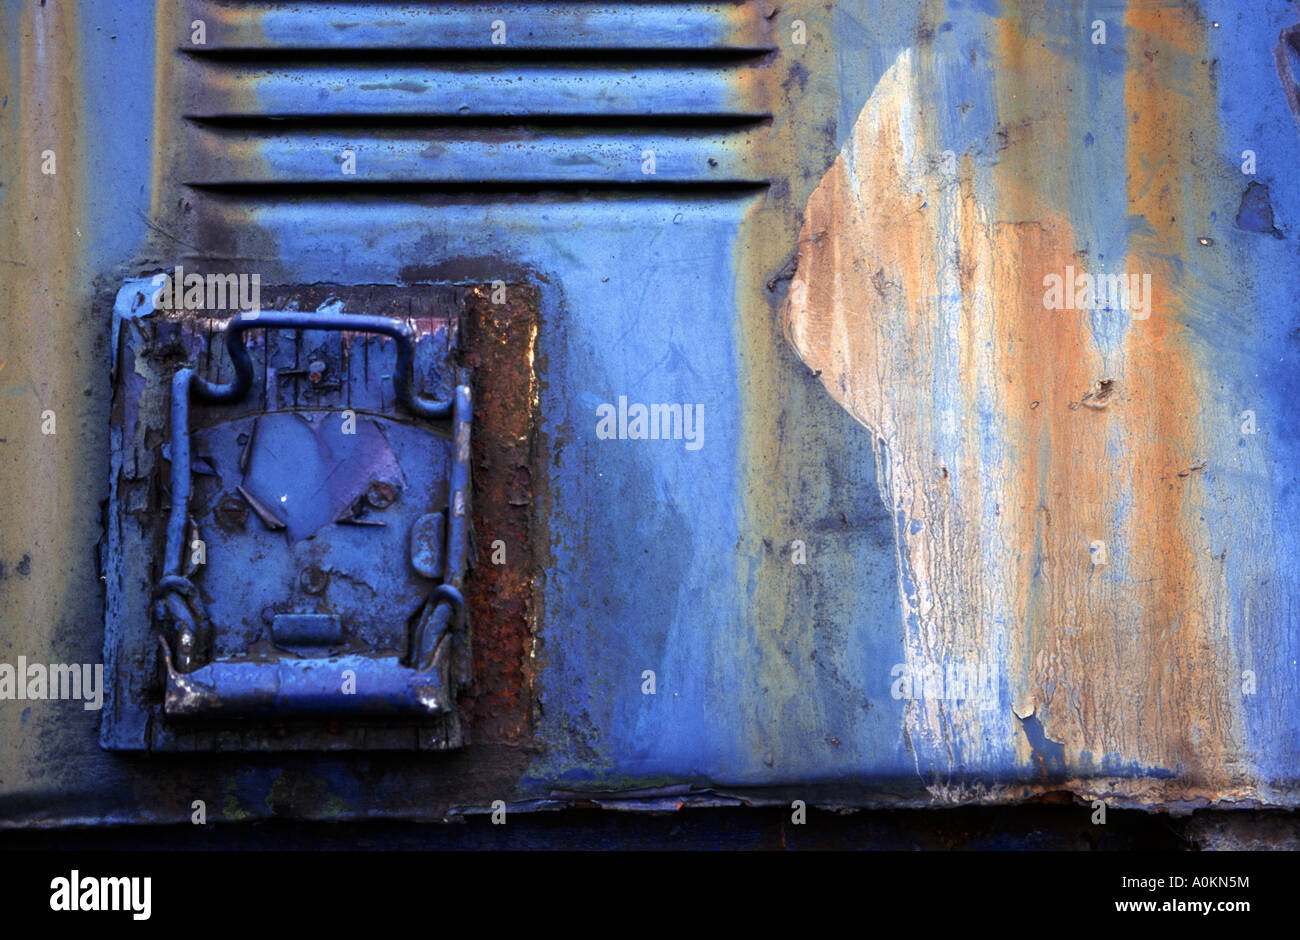 Detail of a railway goods van Stock Photo